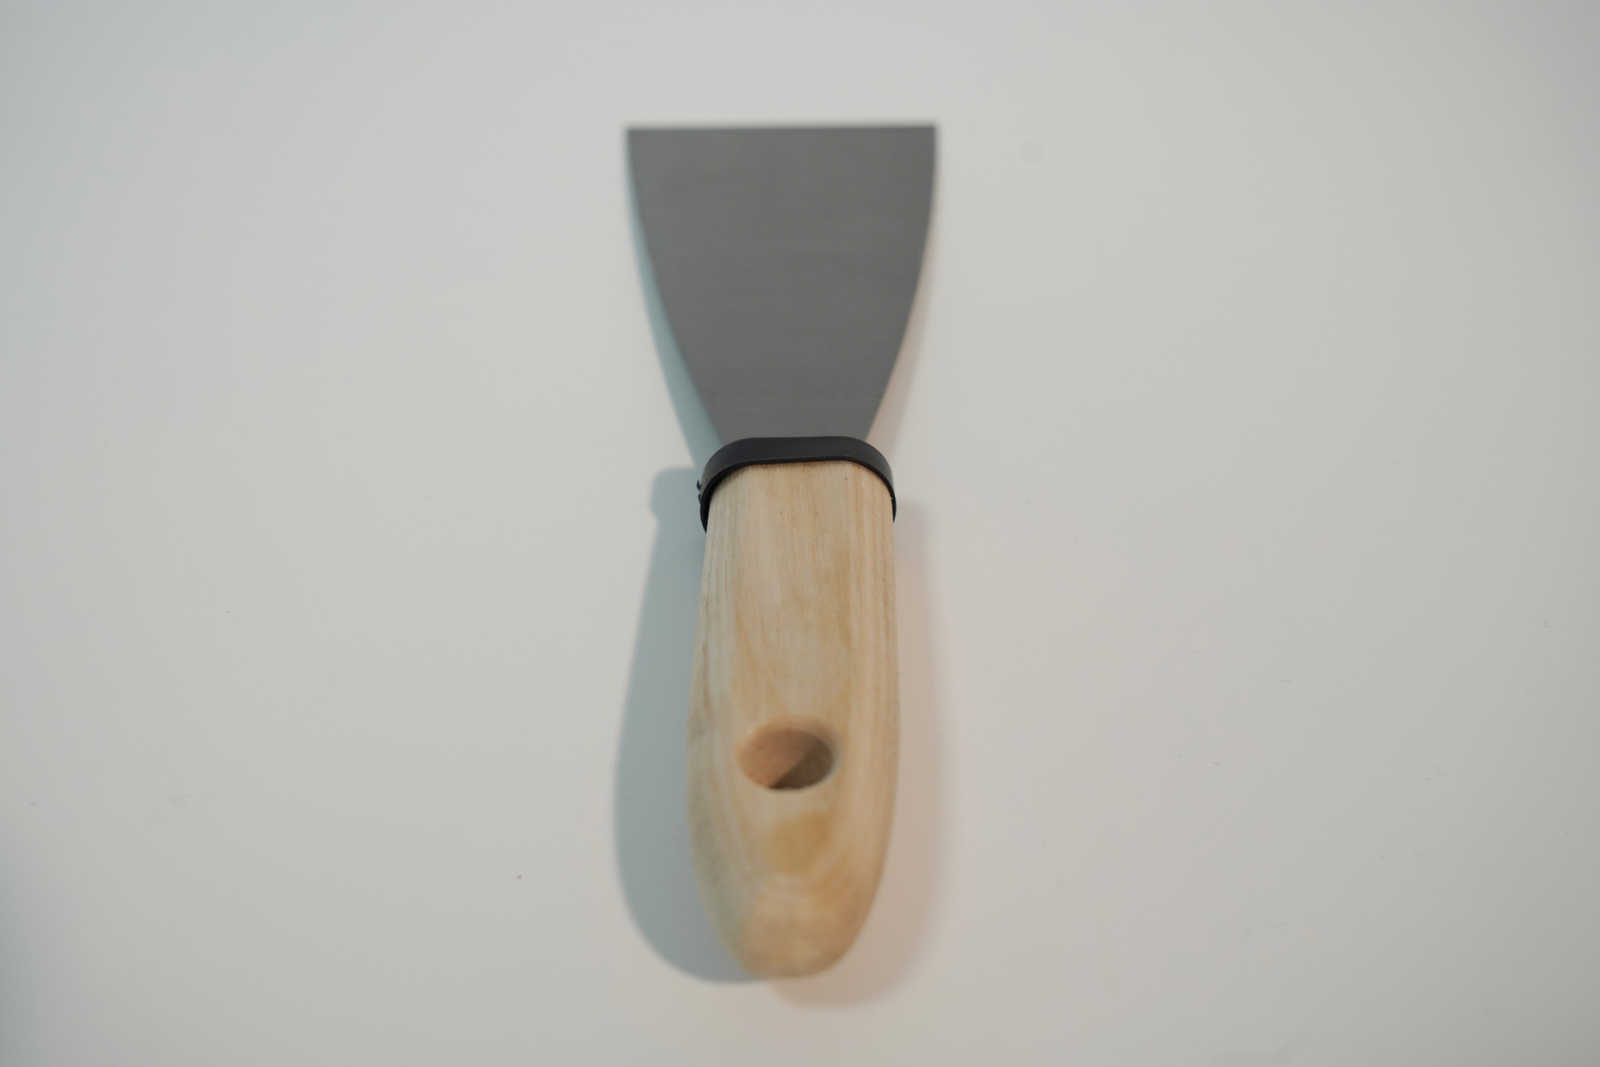             Spatule de peintre 60mm avec lame en acier flexible & manche en bois
        